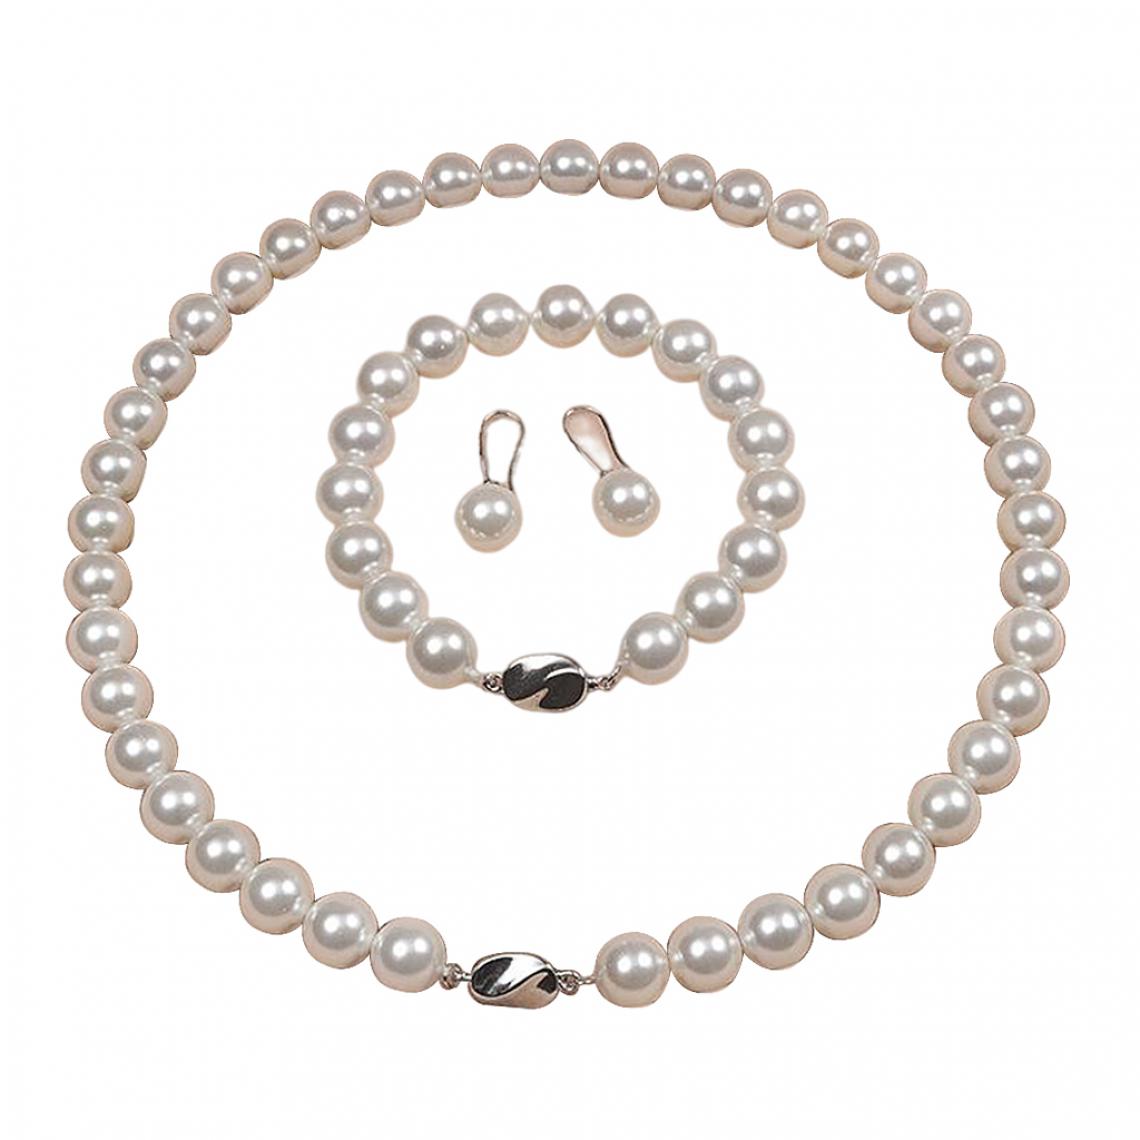 marque generique - Romance ensemble de Bijoux Exquis Shell Perles Collier pour Dame de Mariage Anniversaire Cadeaux - Perles